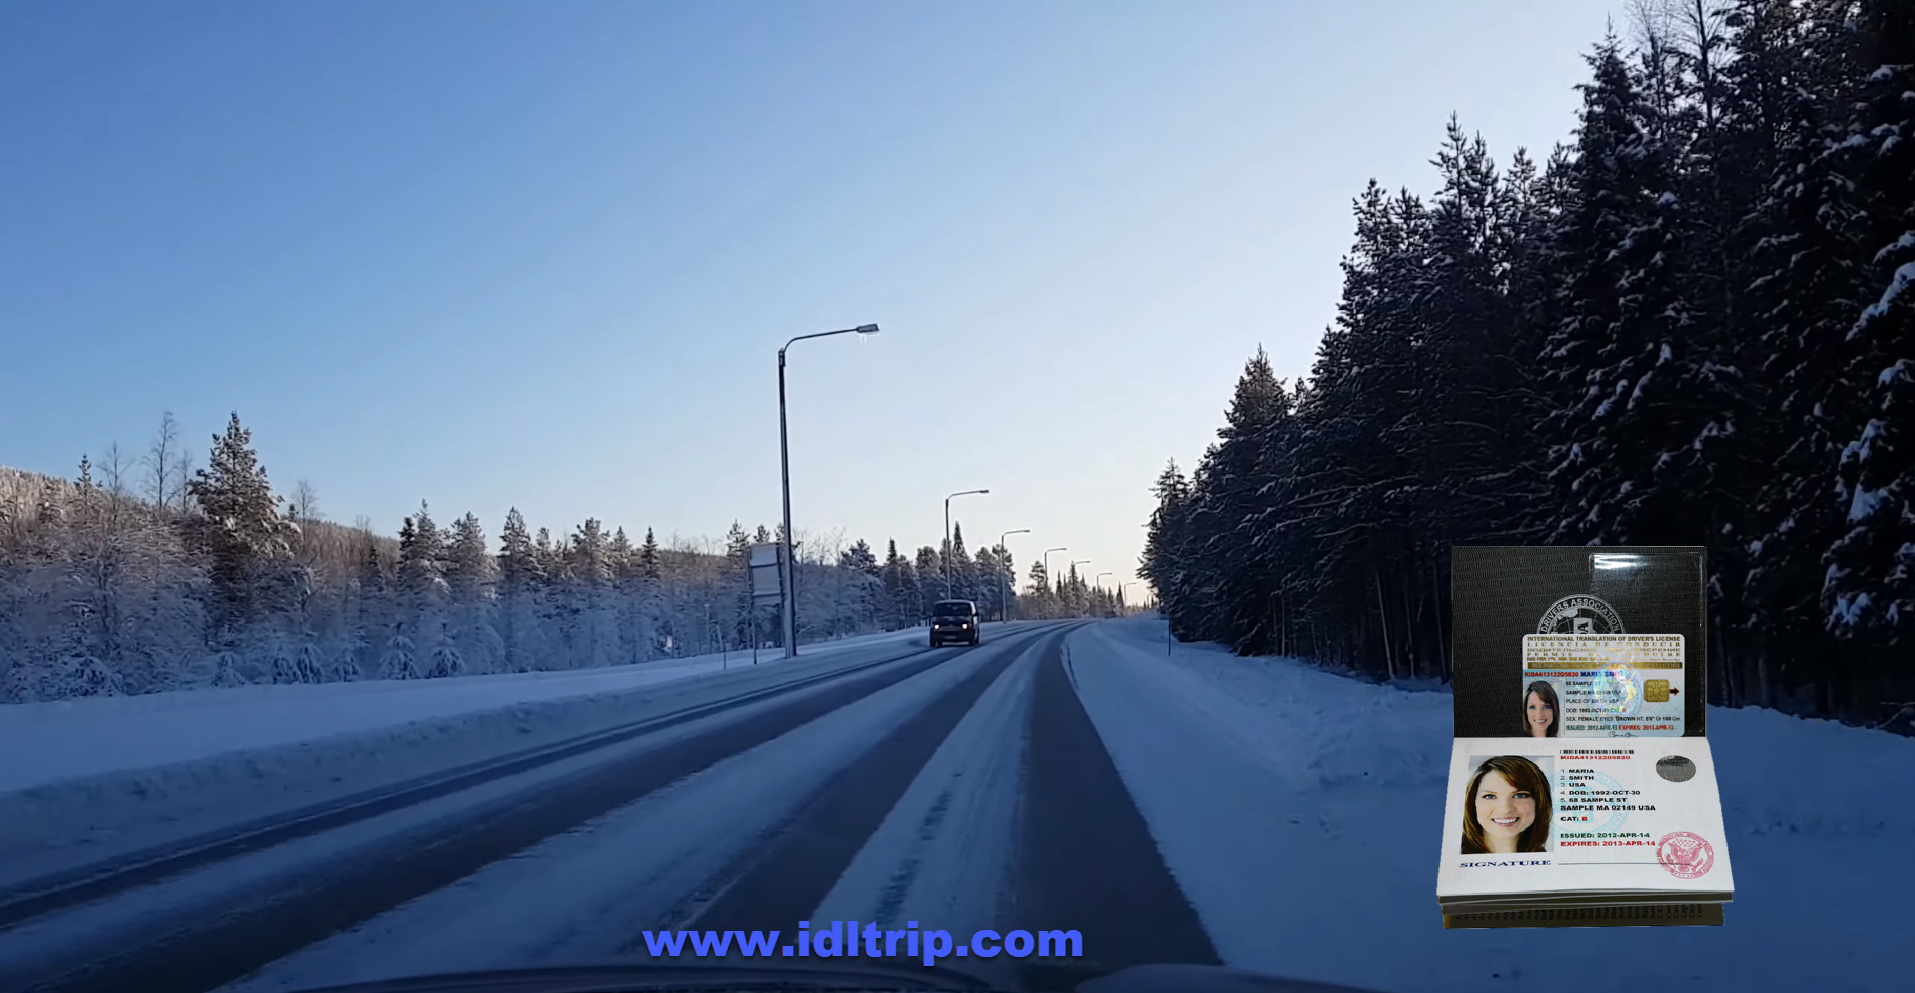 في فصل الشتاء ، يتم تقليل الحد الأقصى للسرعة العامة في كل مكان إلى 80 كم / ساعة.